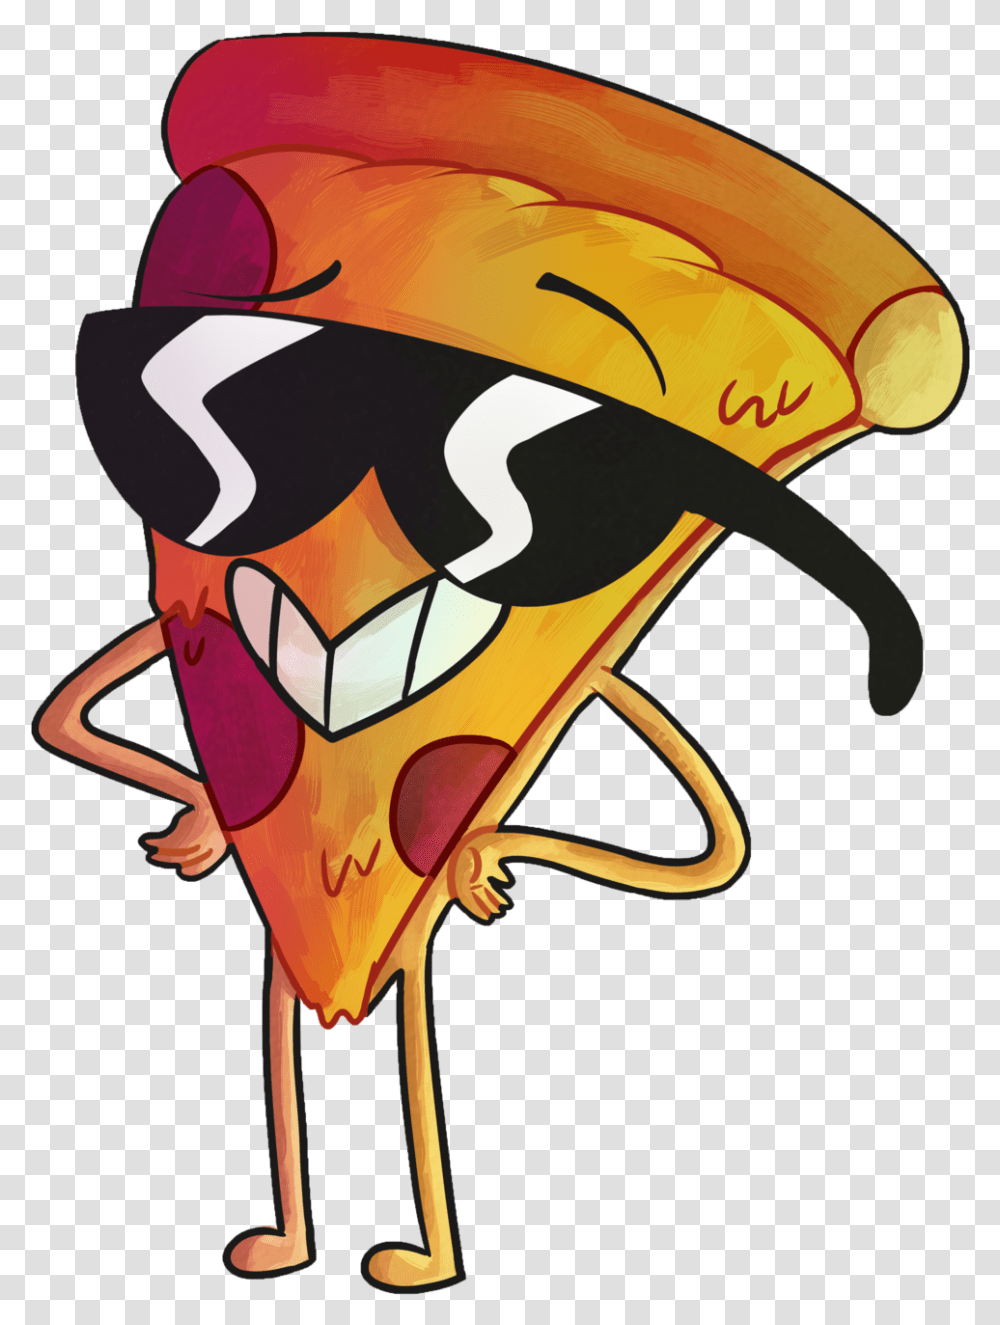 Cartoon Pizza Clipart Cartoon Pizza Slice Drawing, Apparel, Helmet Transparent Png